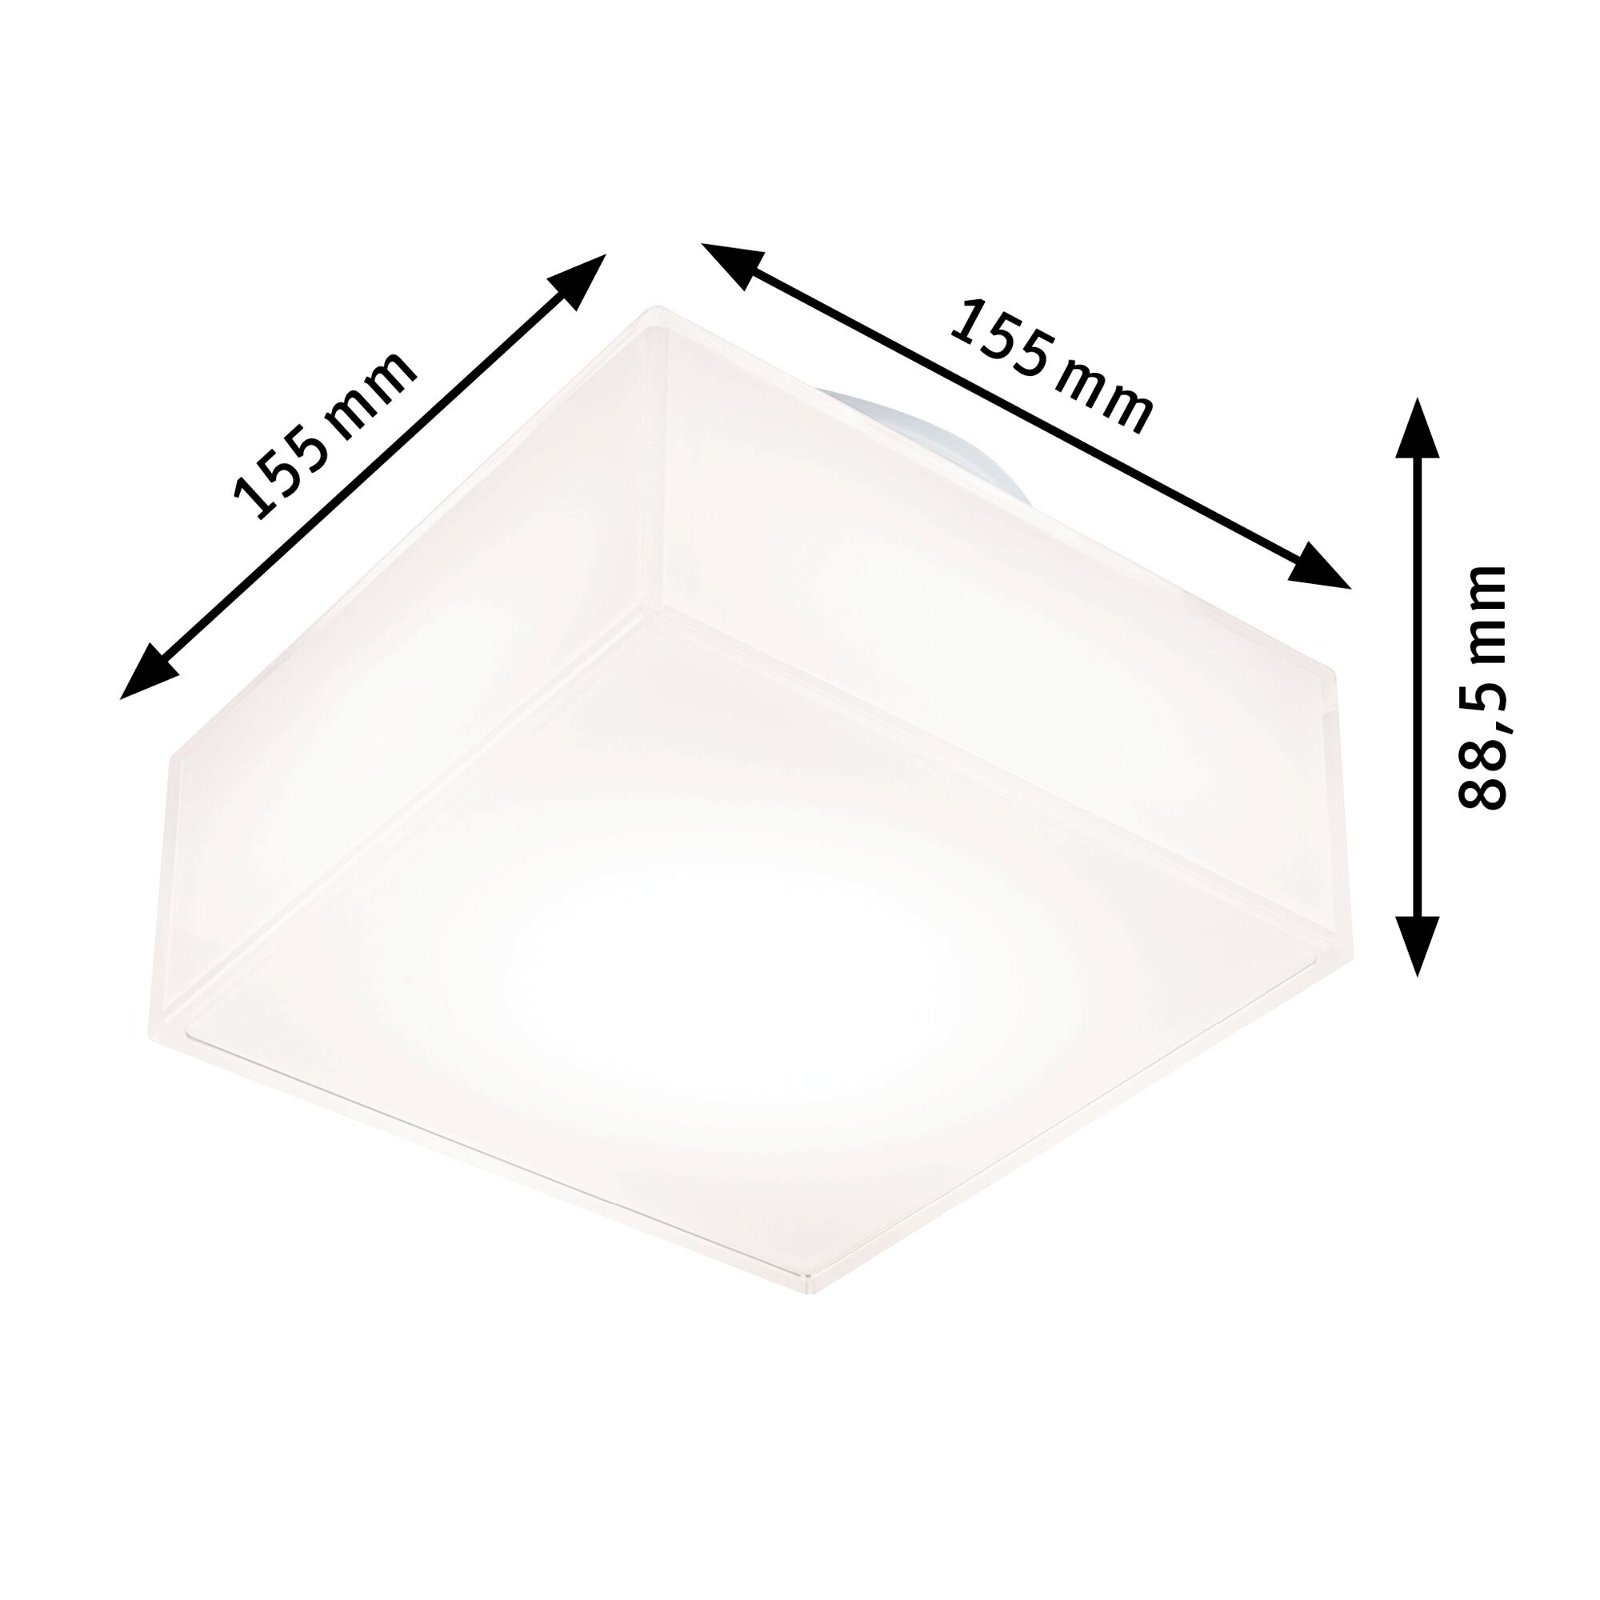 LED Ceiling luminaire Maro IP44 3000K 430lm 230V 6,8W White